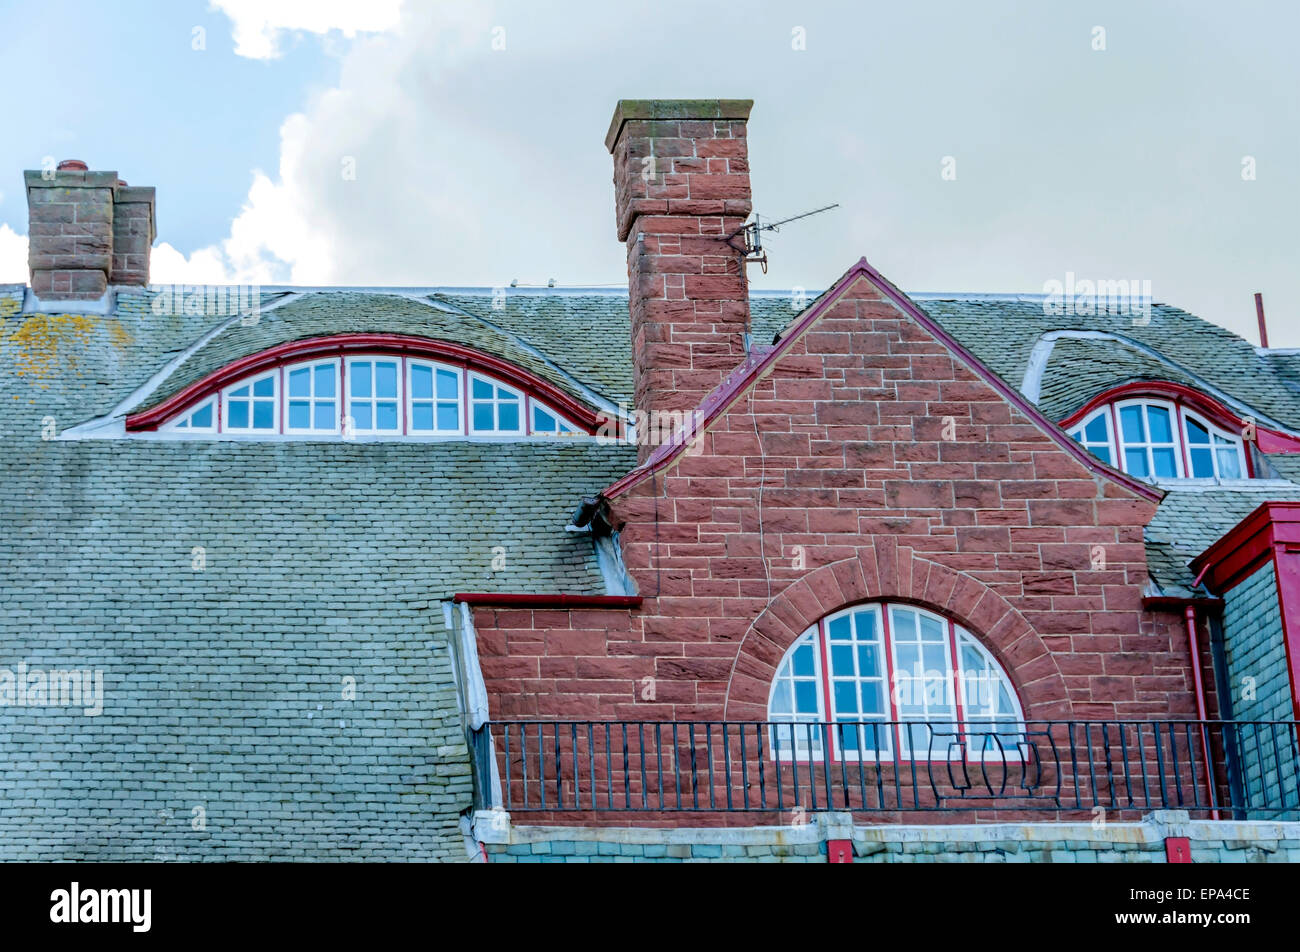 Das komplexe Dach eines Hauses & Kunsthandwerk, mit Rundbogenfenstern und gebogene geplant Dachfenster und hohen Sandstein Kamin Stücke. Stockfoto